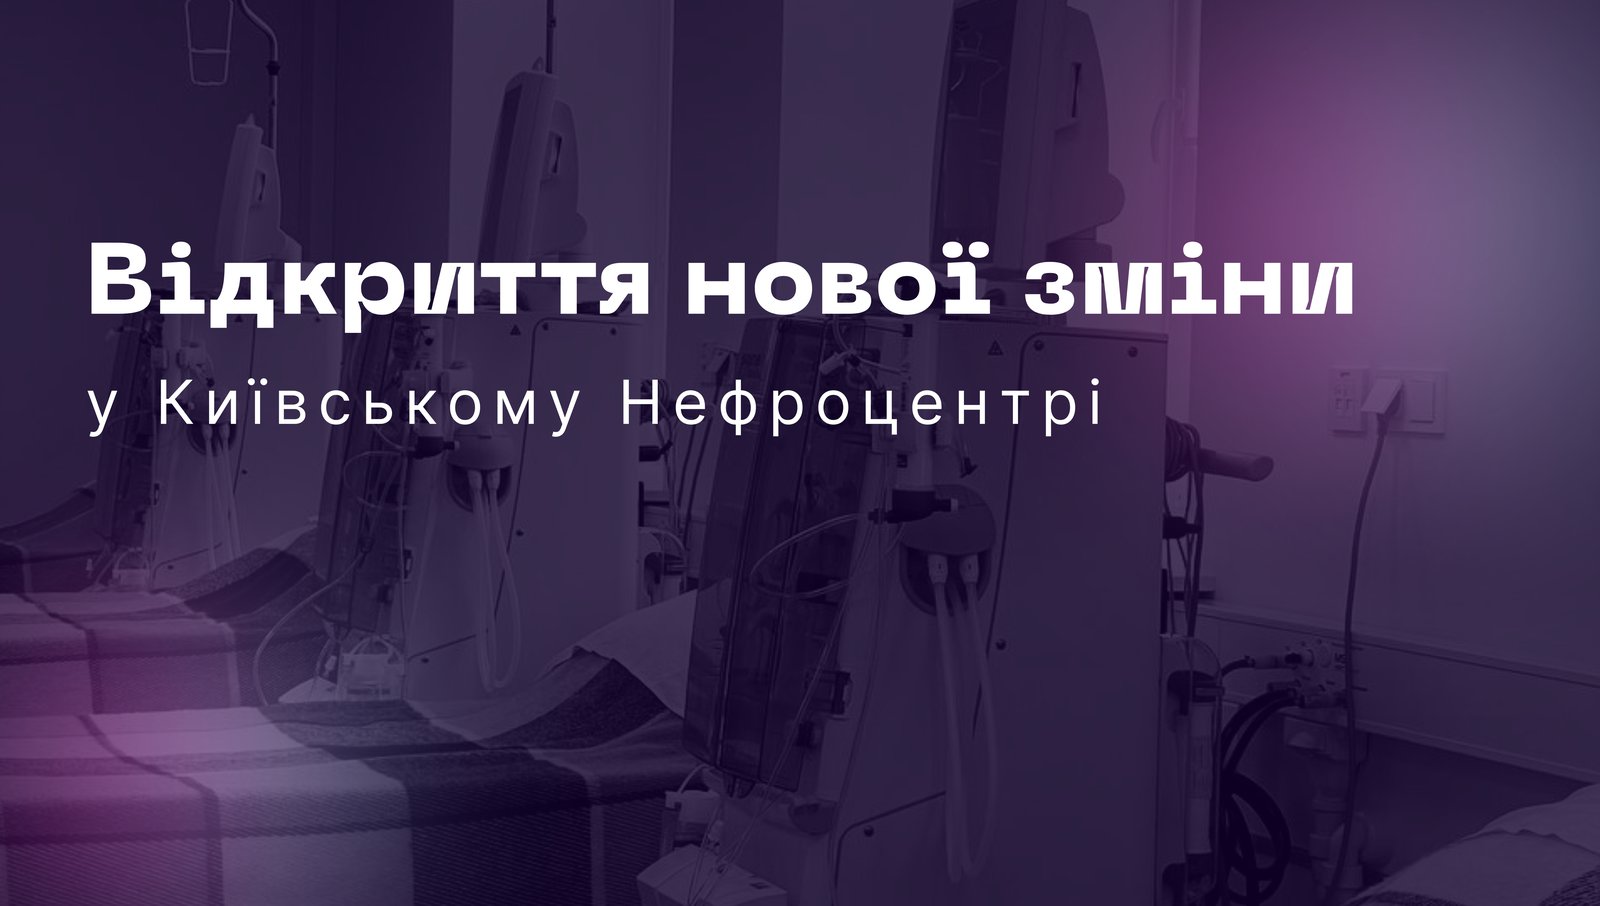 З 2 квітня Київський Нефроцентр відкриває для пацієнтів нові діалізні дні: вівторок, четвер, субота